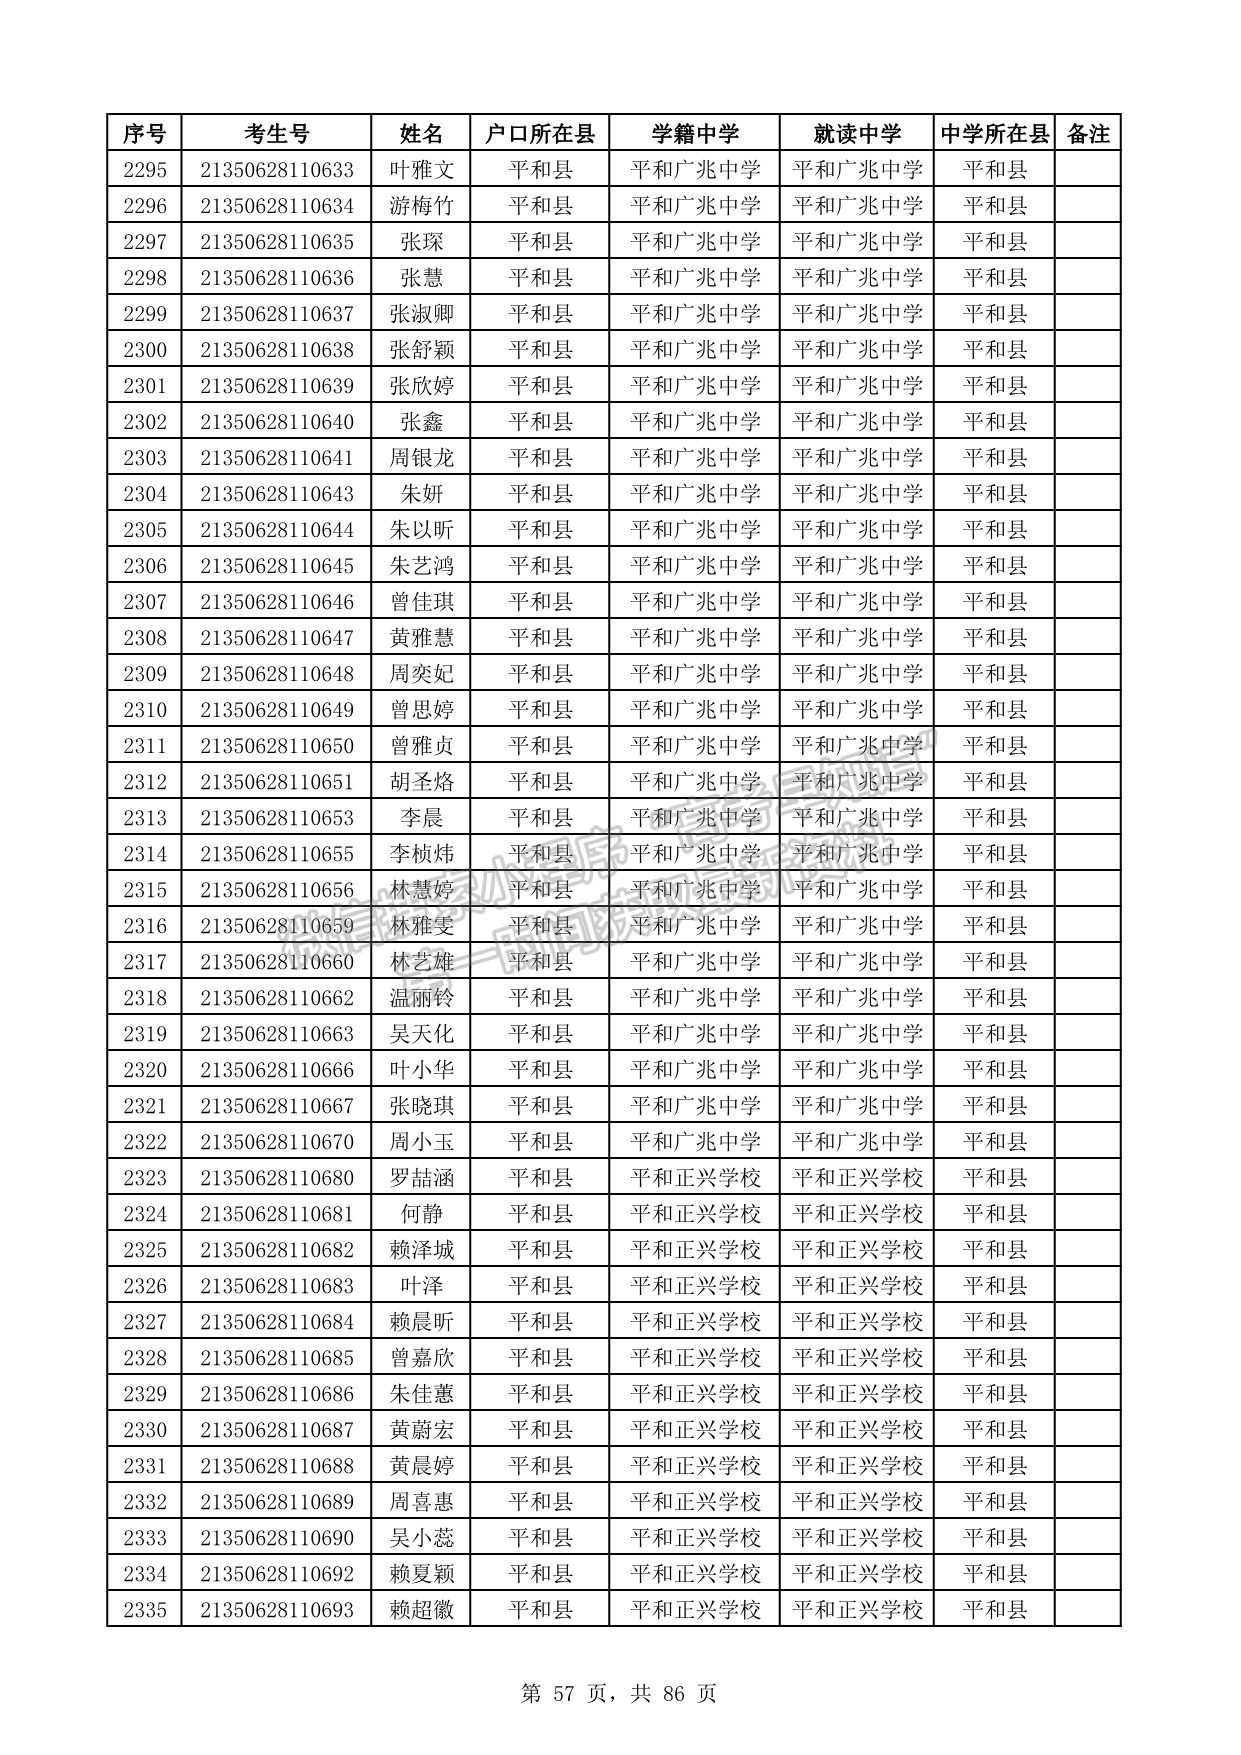 漳州市2021年普通高考地方专项计划资格考生名单公示